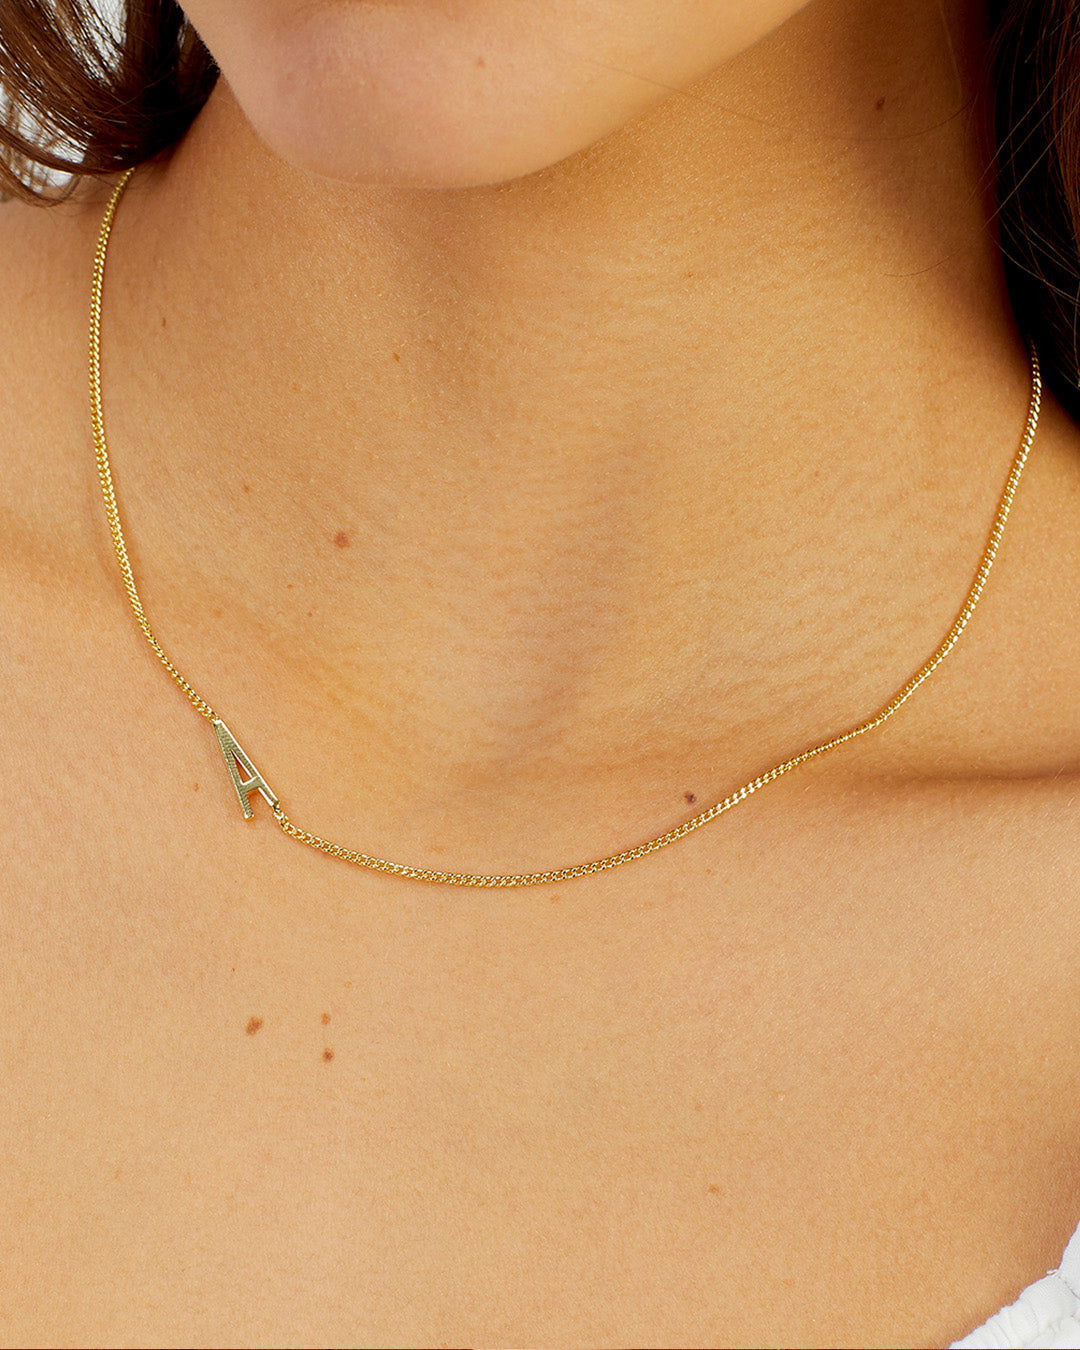 Bespoke Wilder Heart Necklace in Gold Plated, Women's by Gorjana